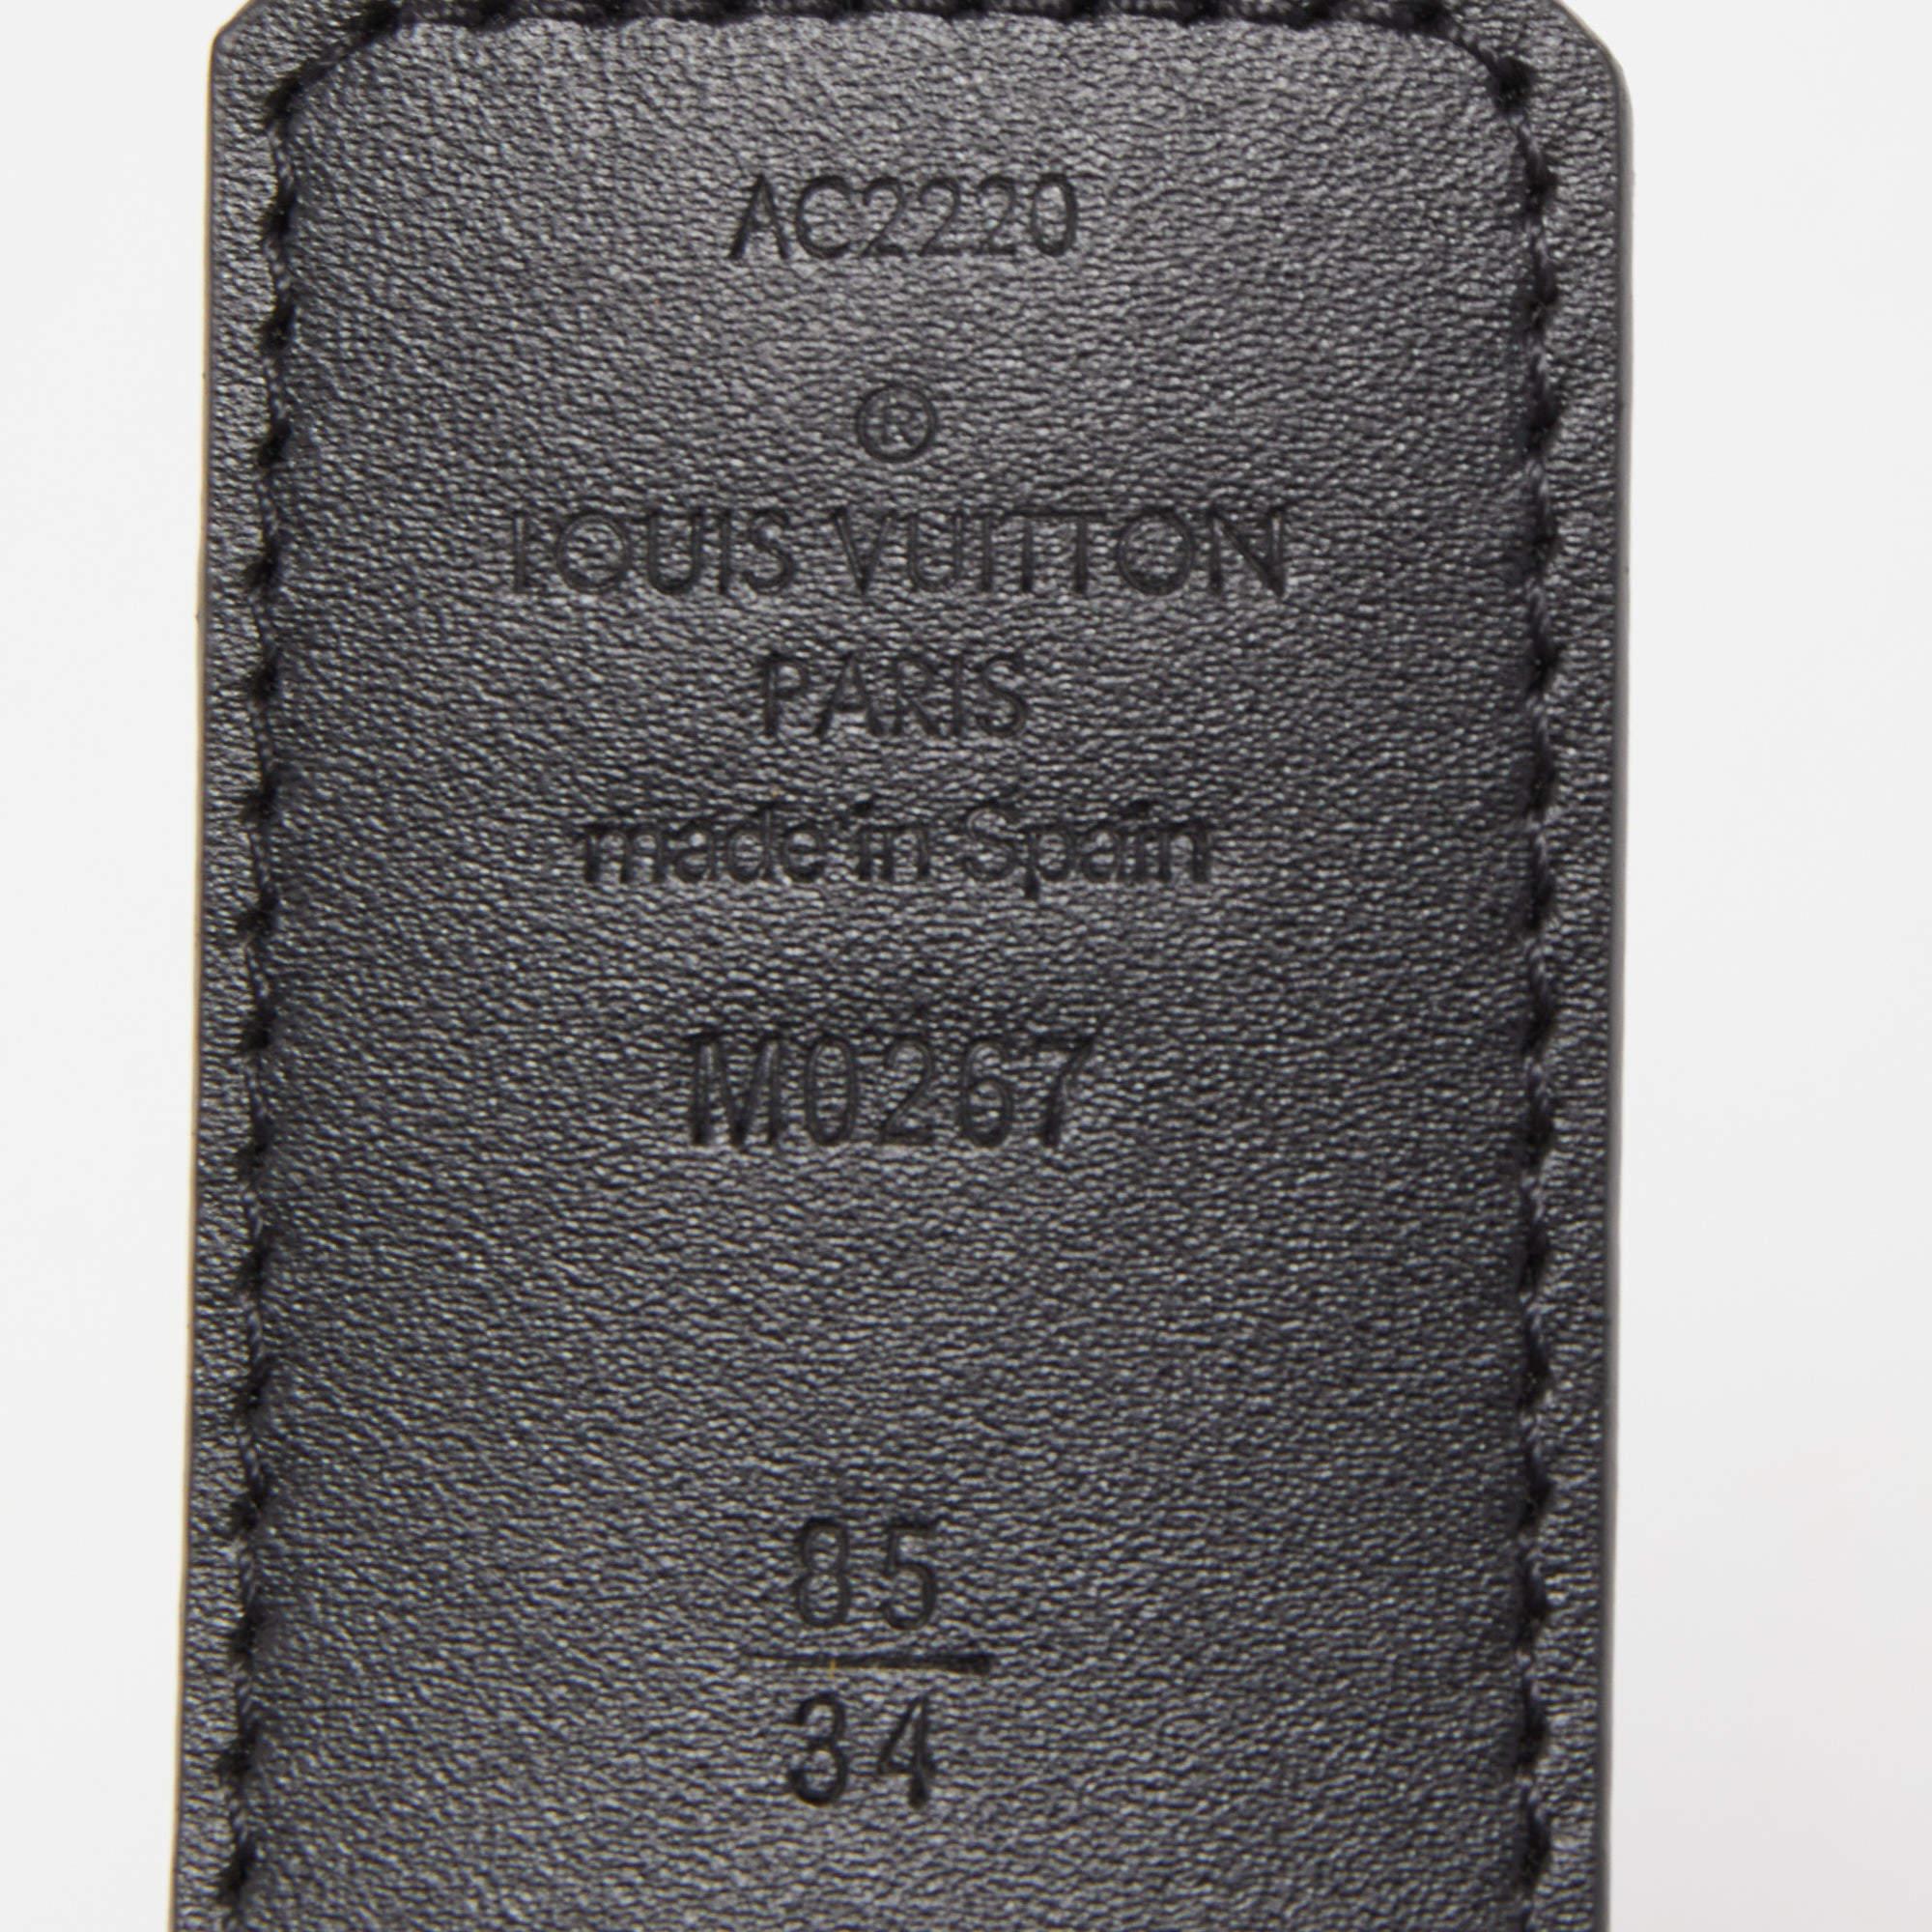 Ajoutez une touche élégante à votre tenue d'intérieur avec cette ceinture Louis Vuitton. Il est soigneusement conçu pour durer et rehausser votre style pendant longtemps. Associez-le à des boucles caractéristiques.

Comprend : Sac à poussière